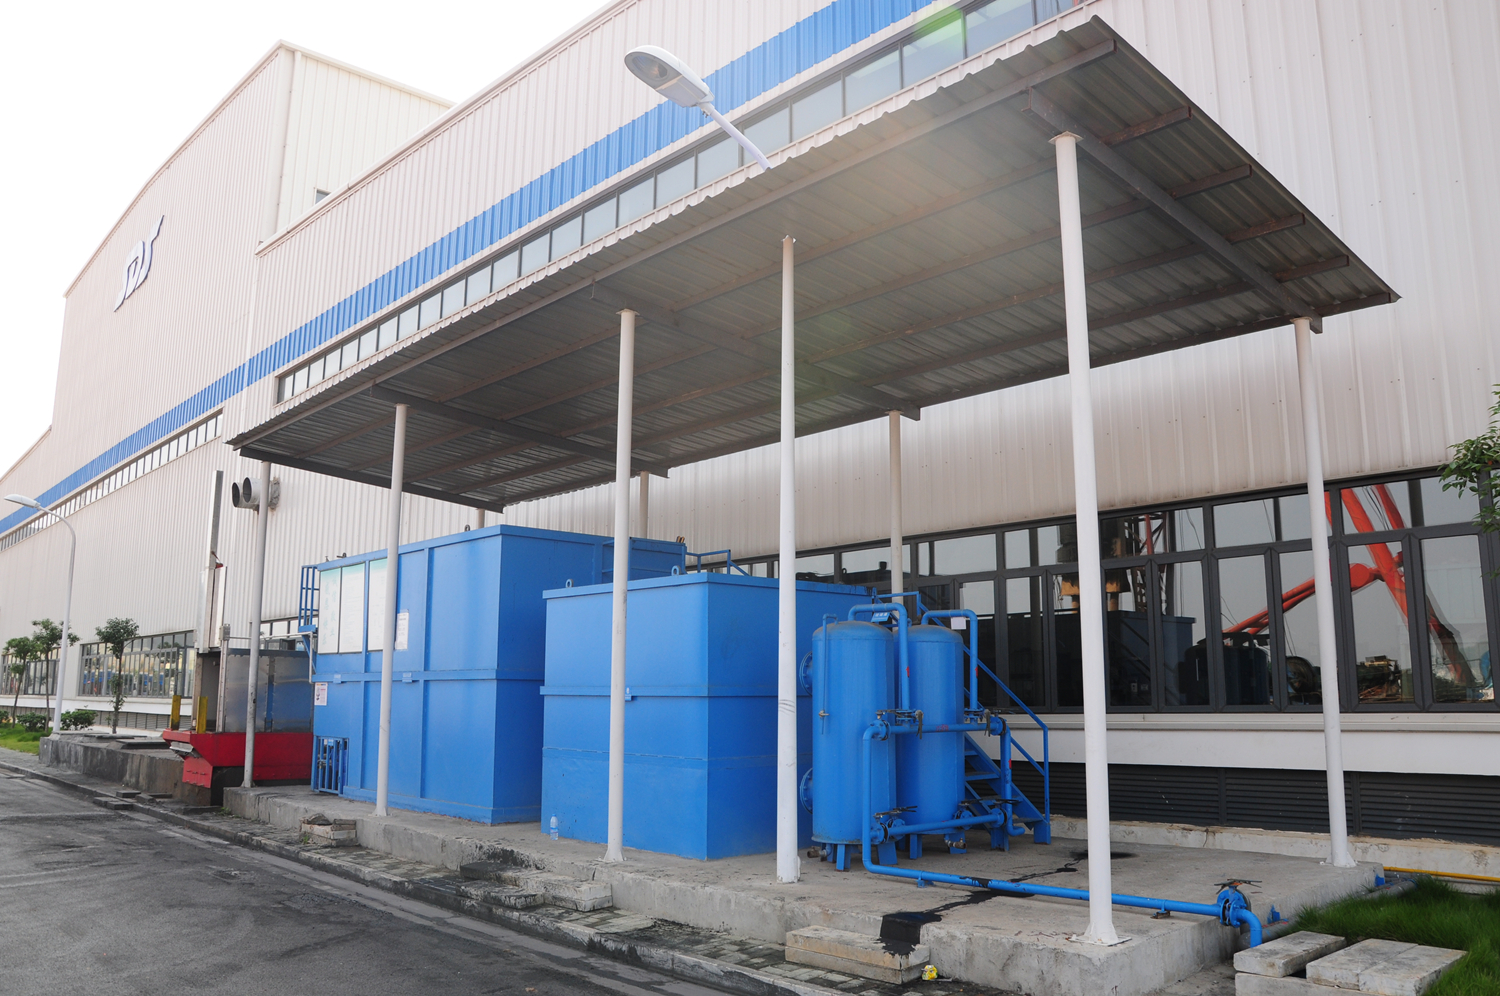 上海纳铁福传动轴有限公司武汉工厂污水处理站运营案例